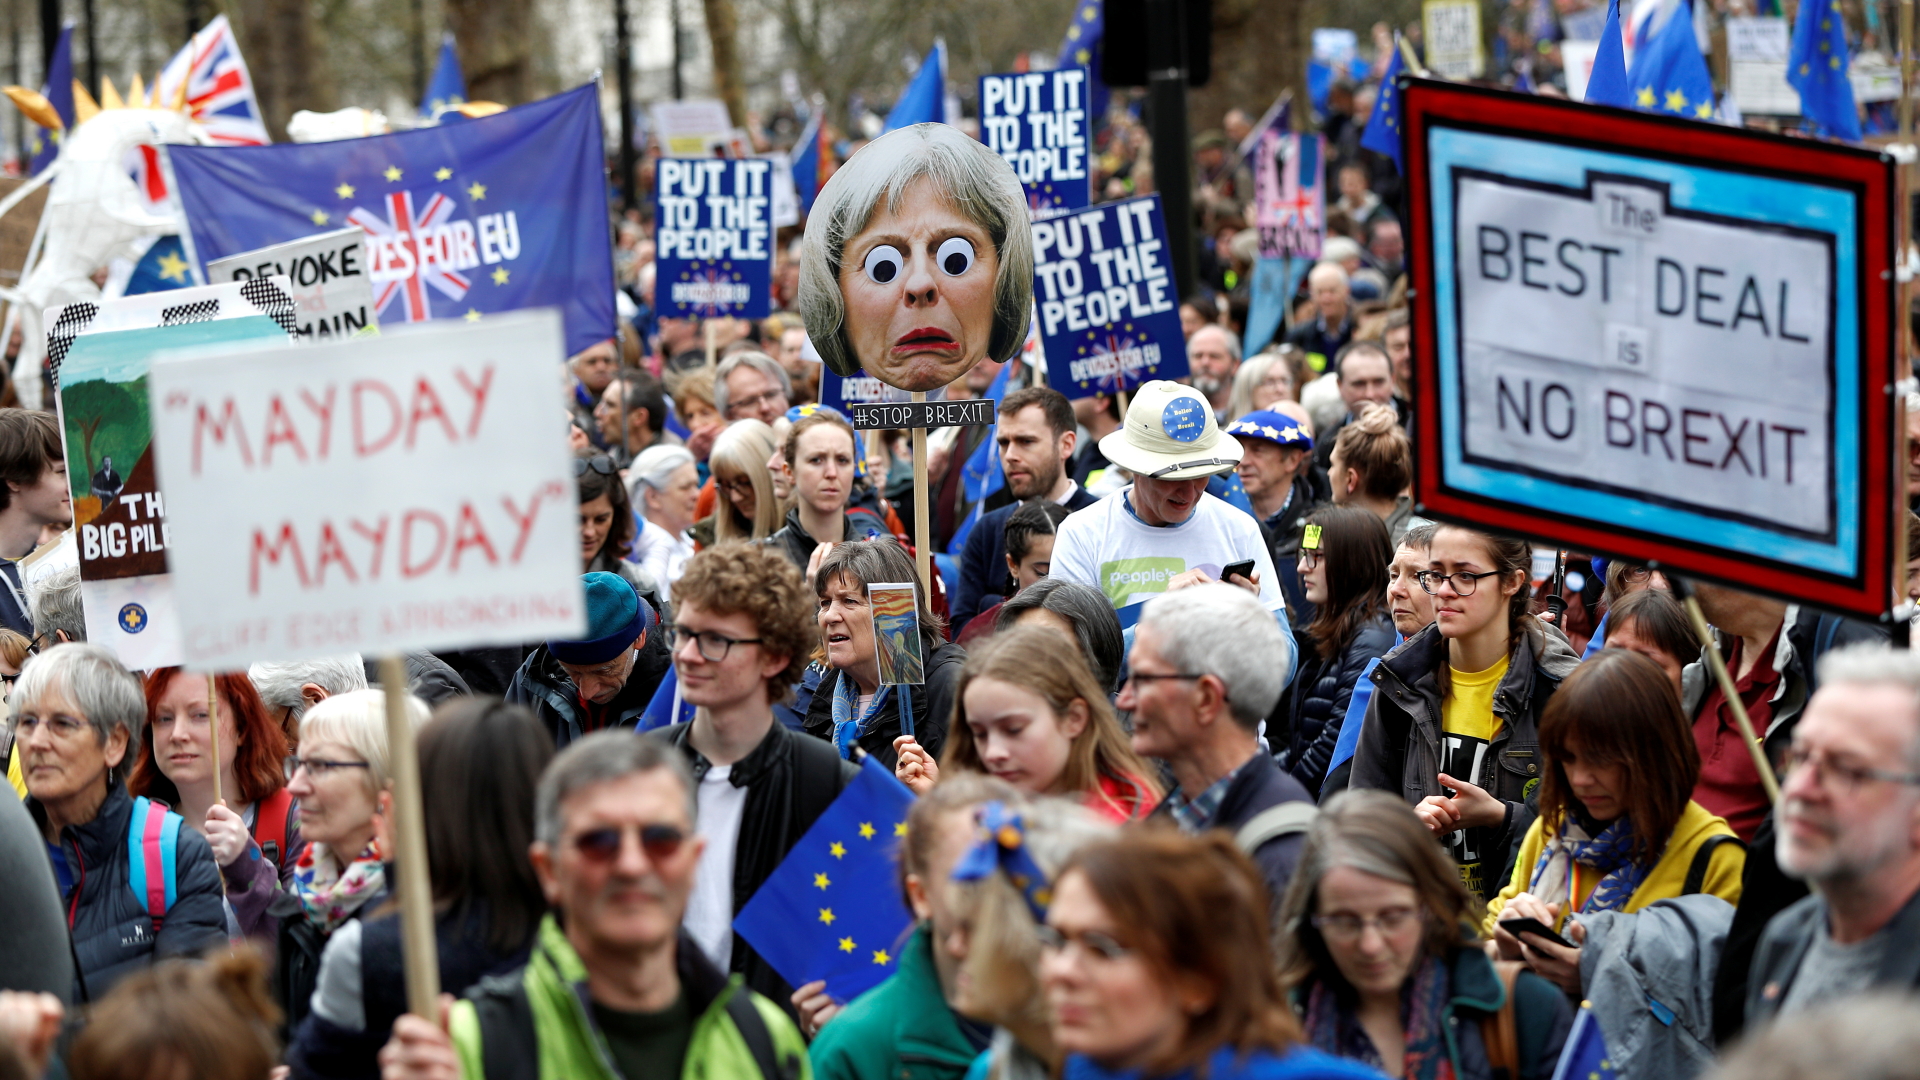 Brexit-Gegner ziehen mit EU-Fahnen und Plakaten durch London.